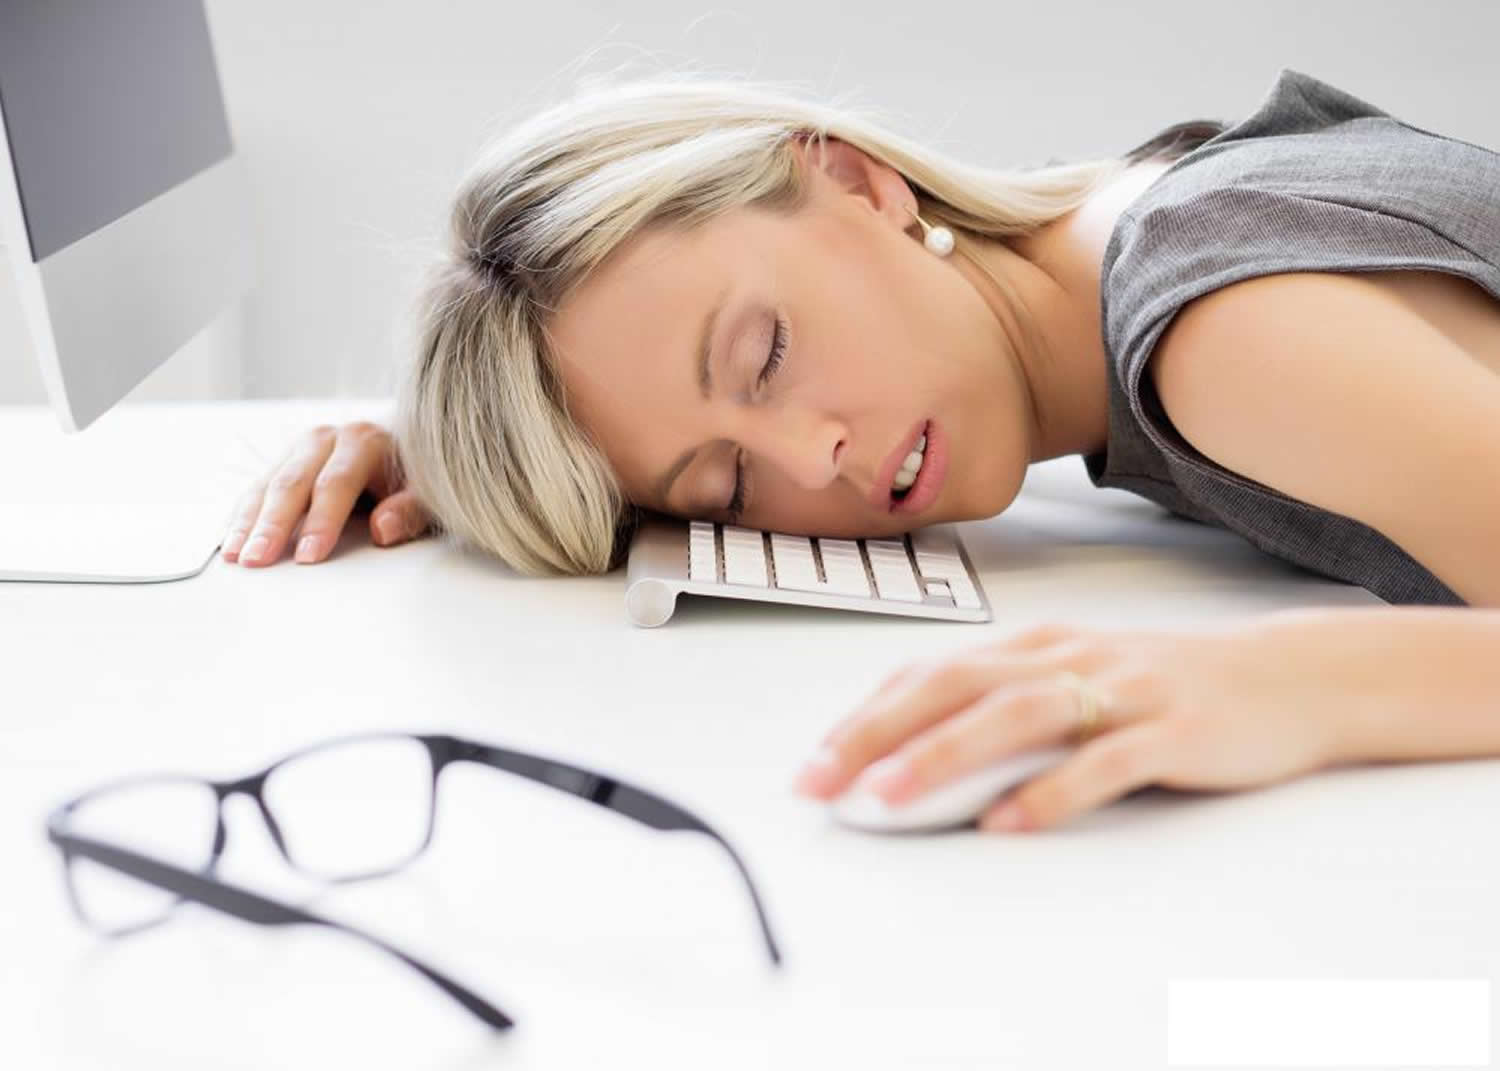 How Does Sleep Apnea Impact Your Health?